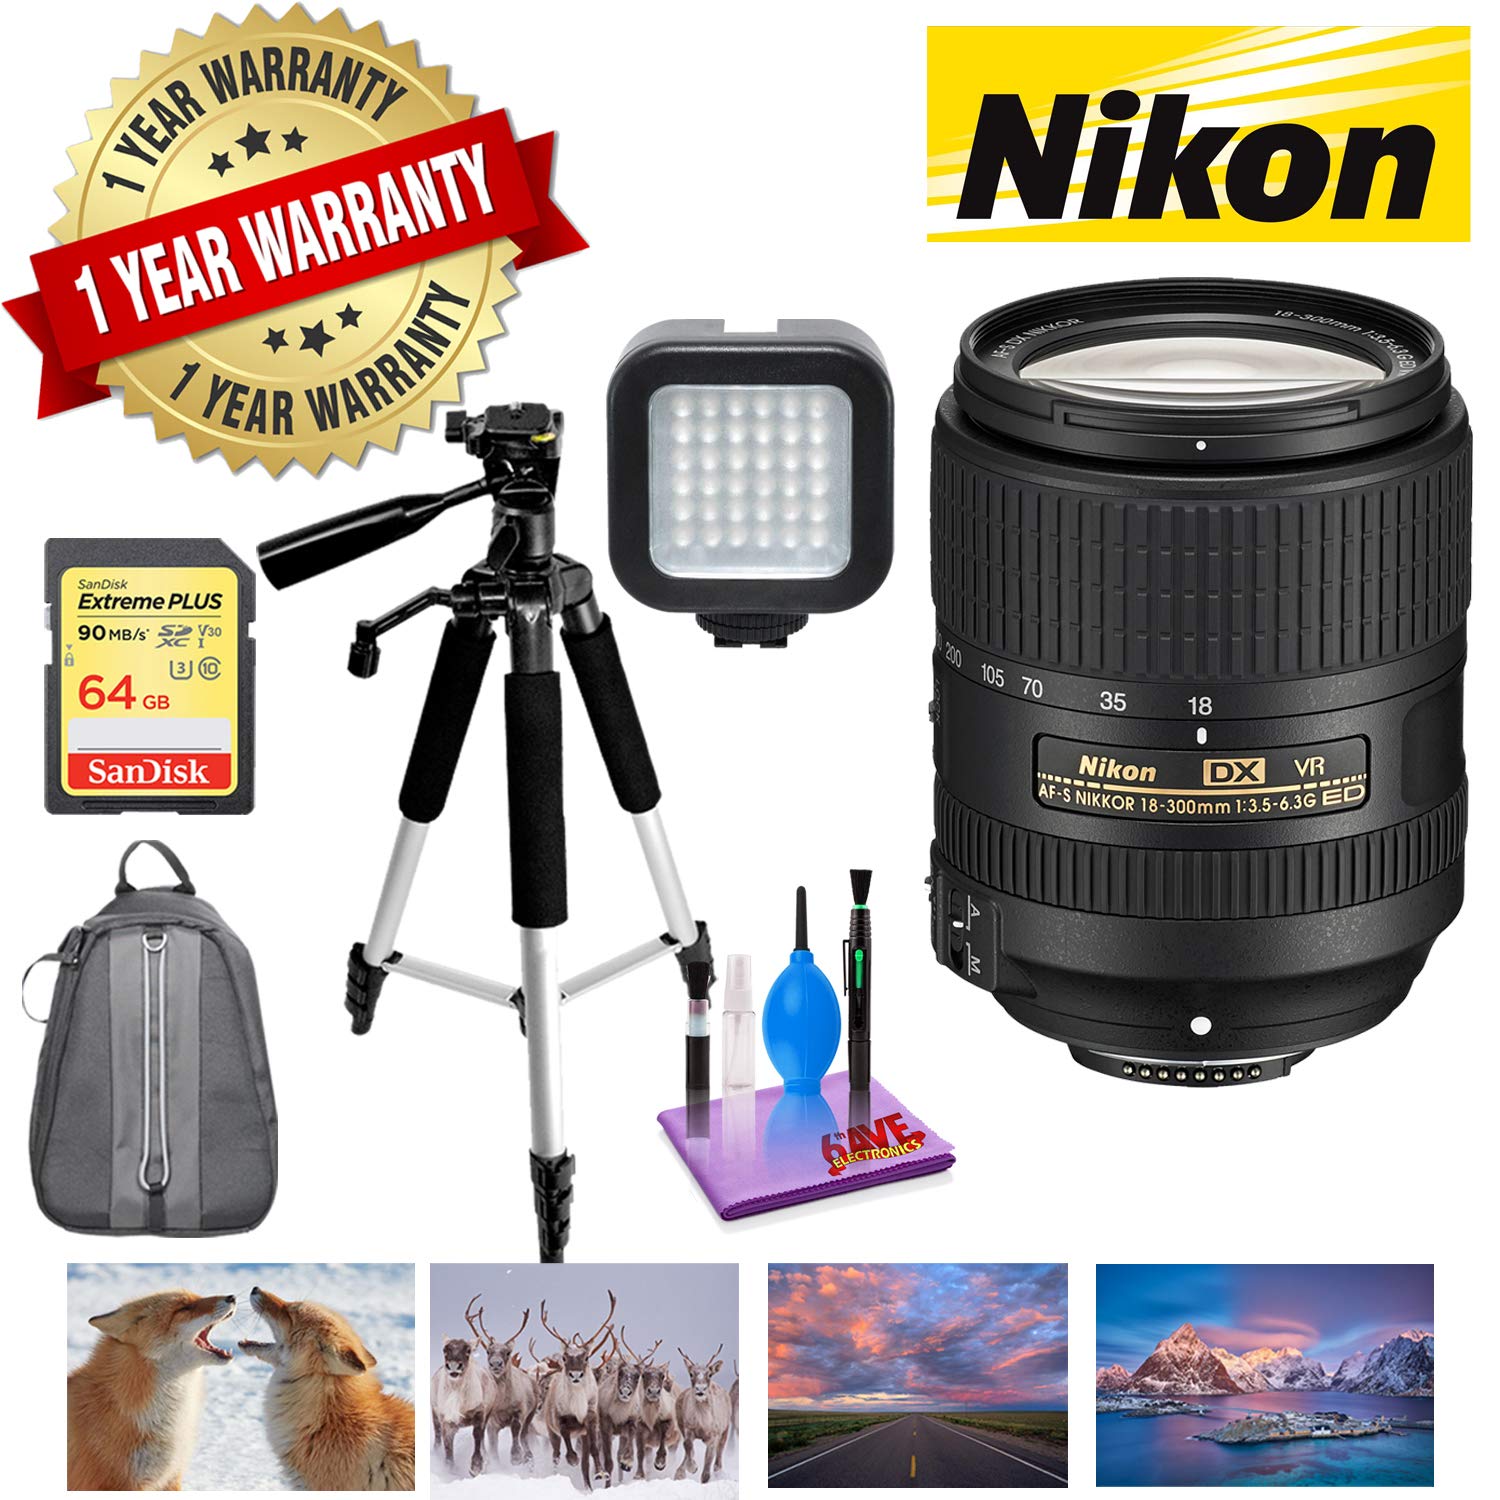 NIKON 18-300MM F/3.5-6.3G ED AF-S DX VR Lens with 1 Year Warranty, Sandisk 64GB Memory, Portable LED Light Deluxe Bundle